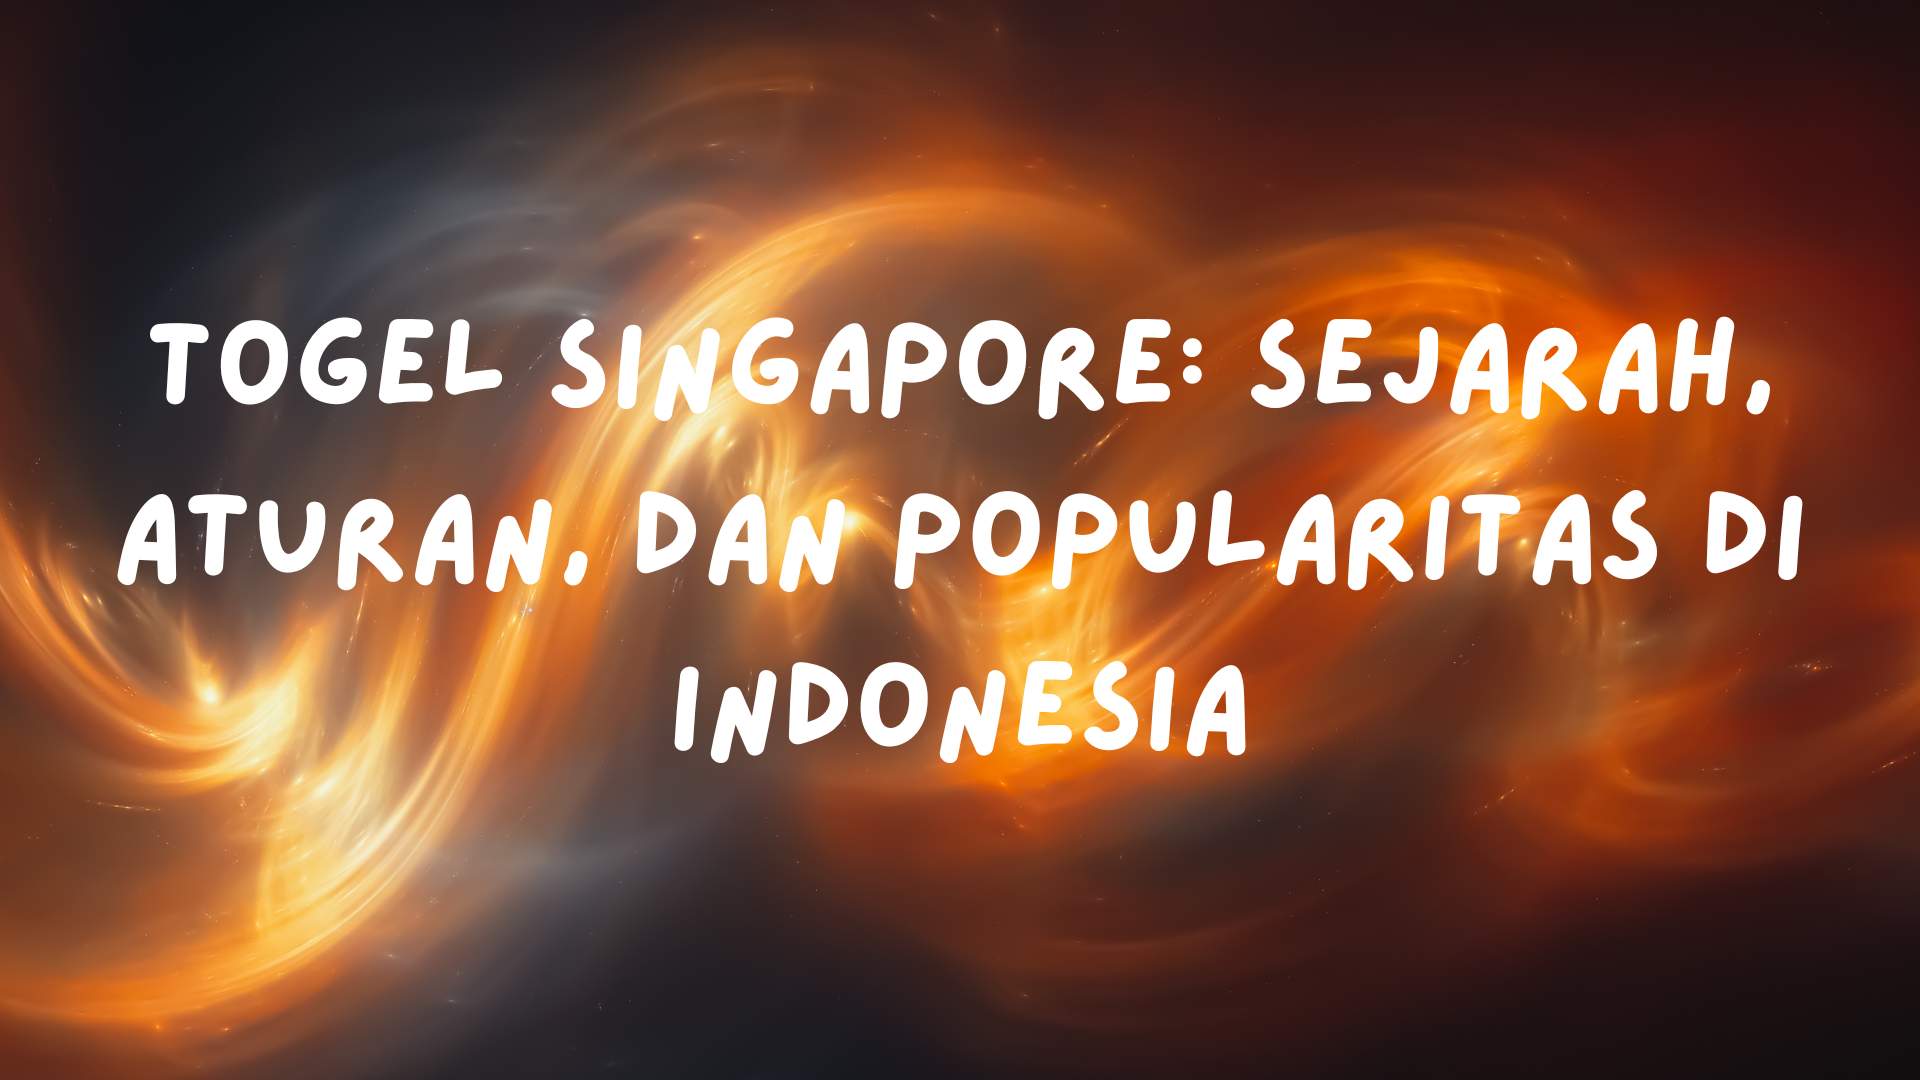 Togel Singapore: Sejarah, Aturan, dan Popularitas di Indonesia